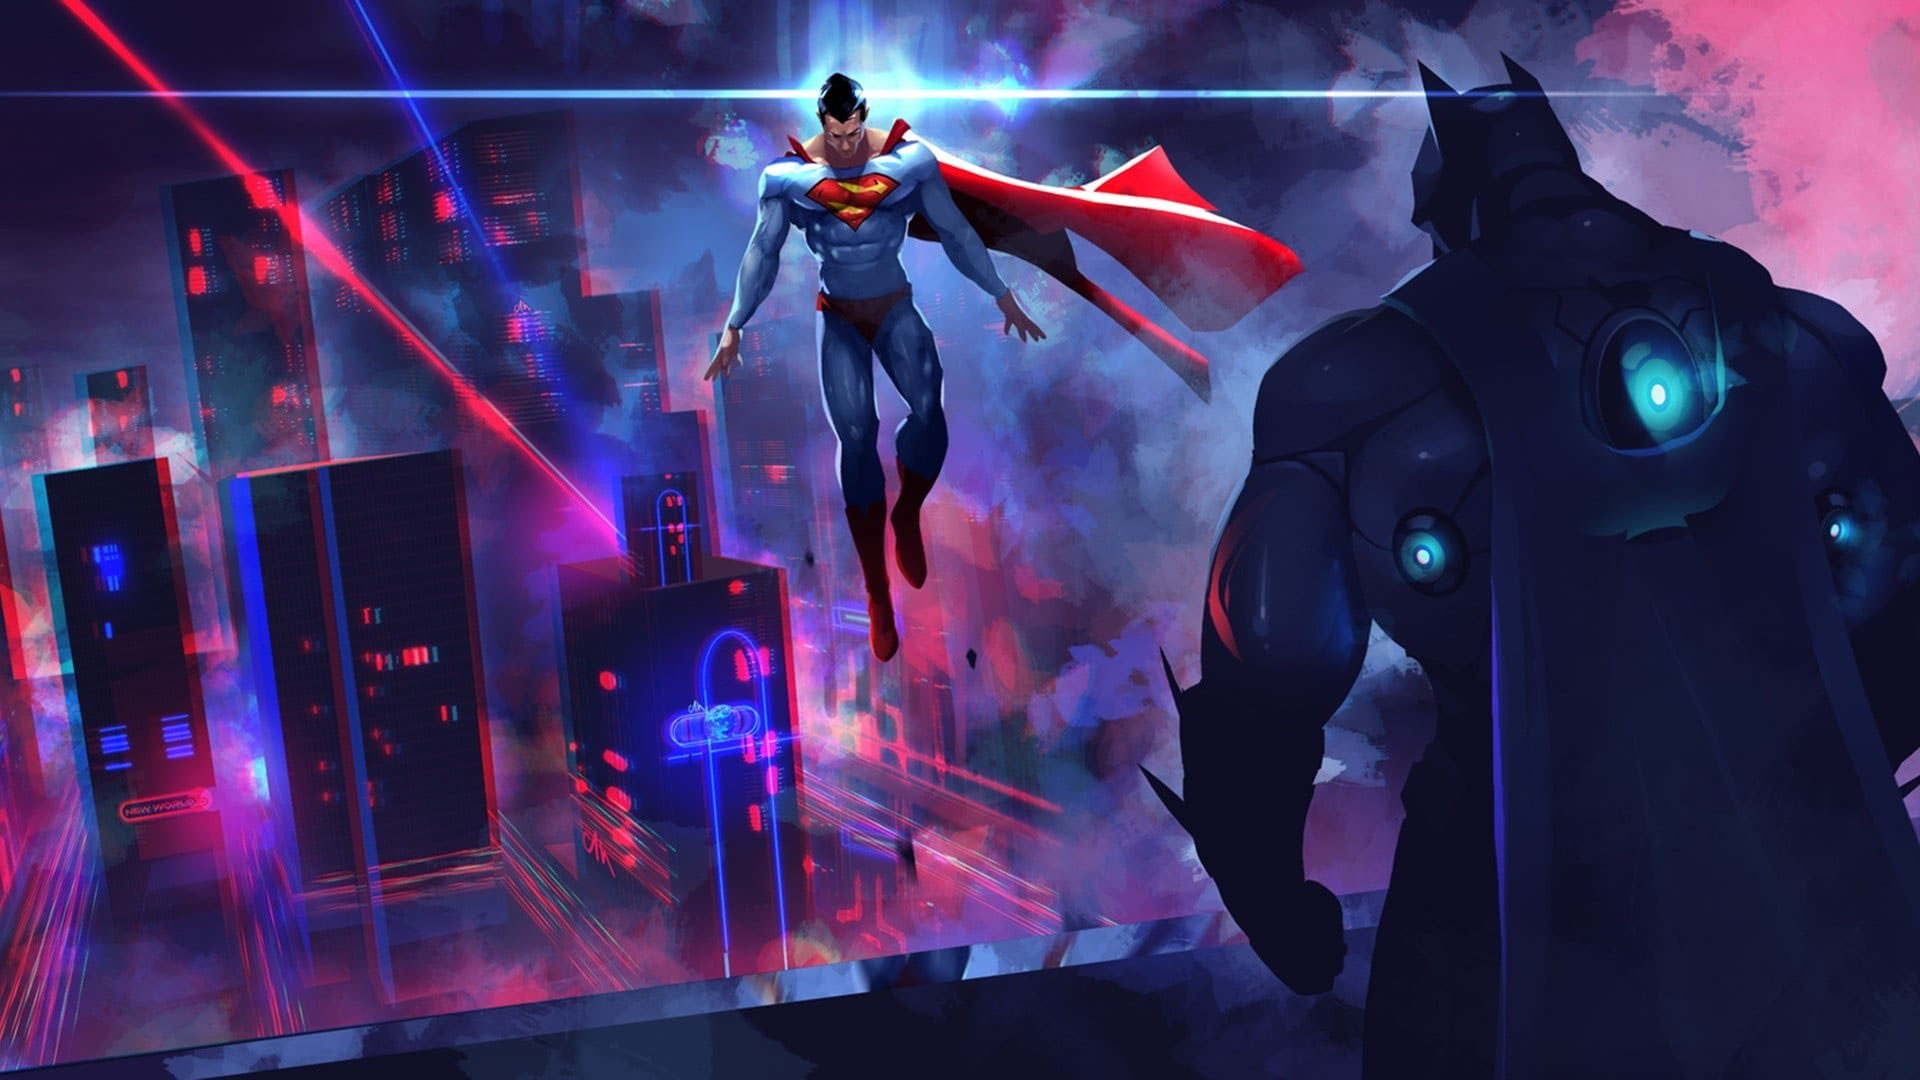 Wallpaper Dc Comics Superman Vs Batman Illustration